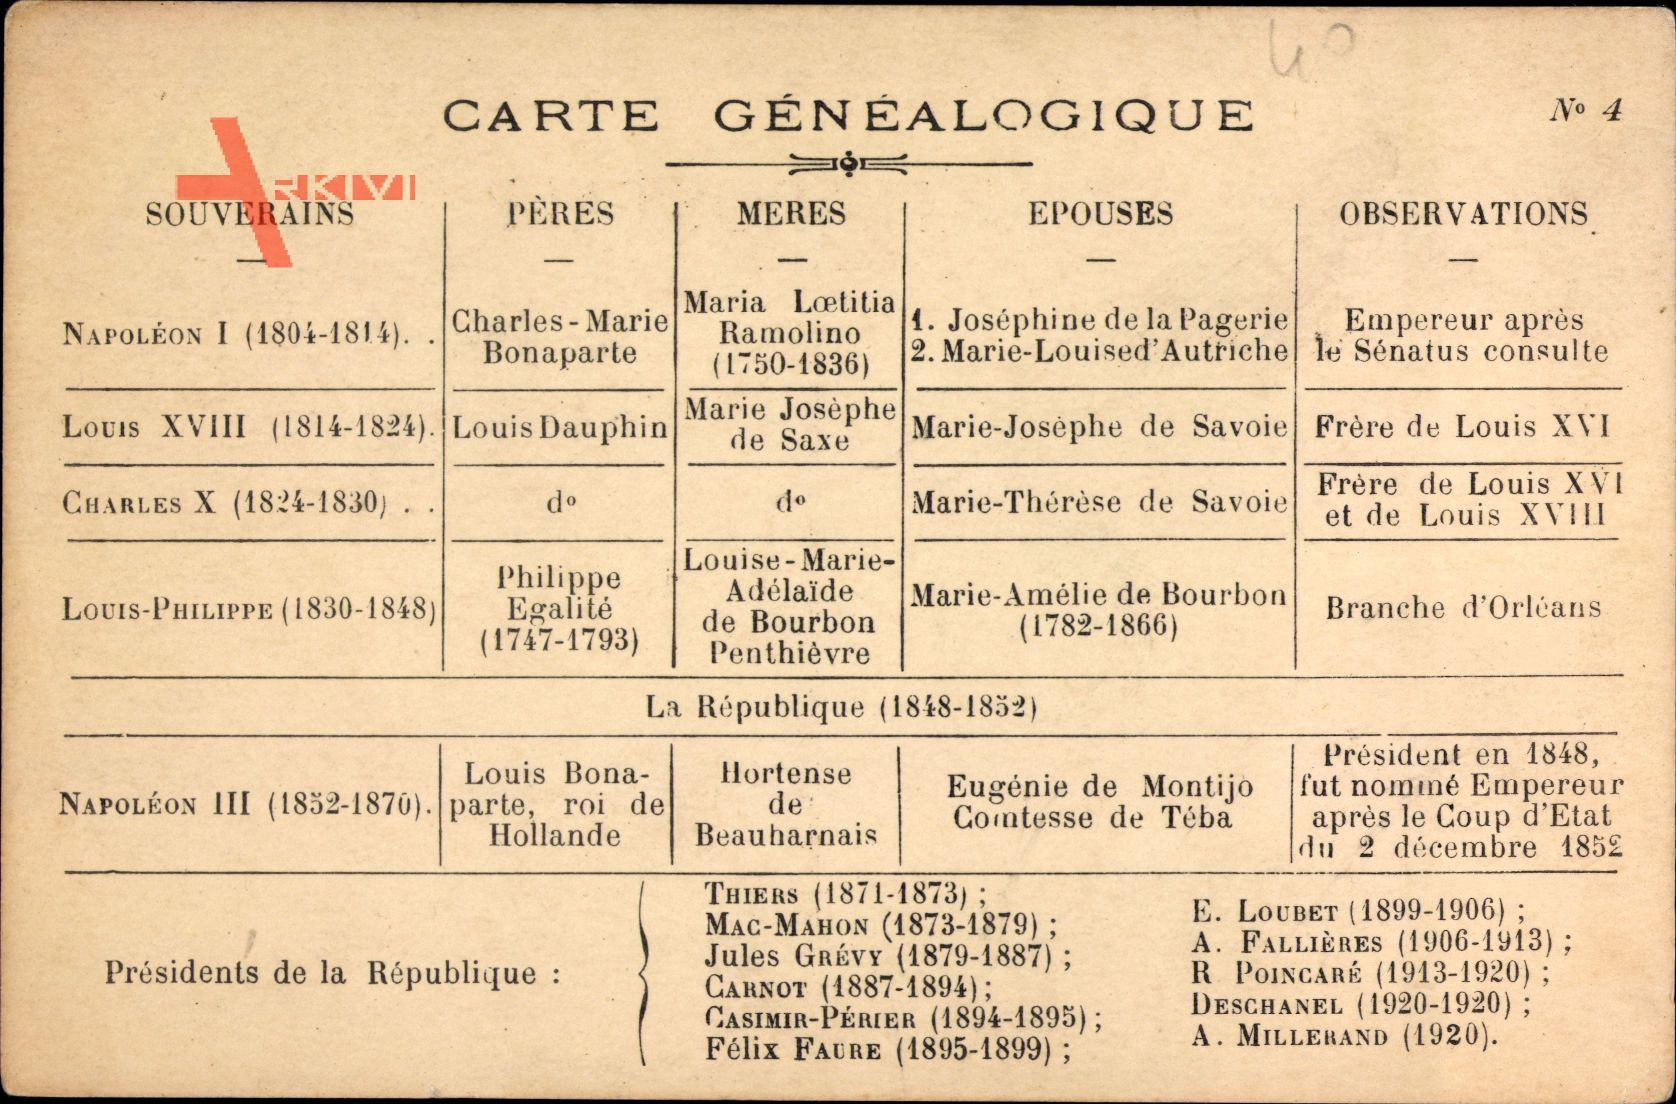 Carte Généalogique, Napoleon I., Napoléon III. Louis XVIII., Charles X.